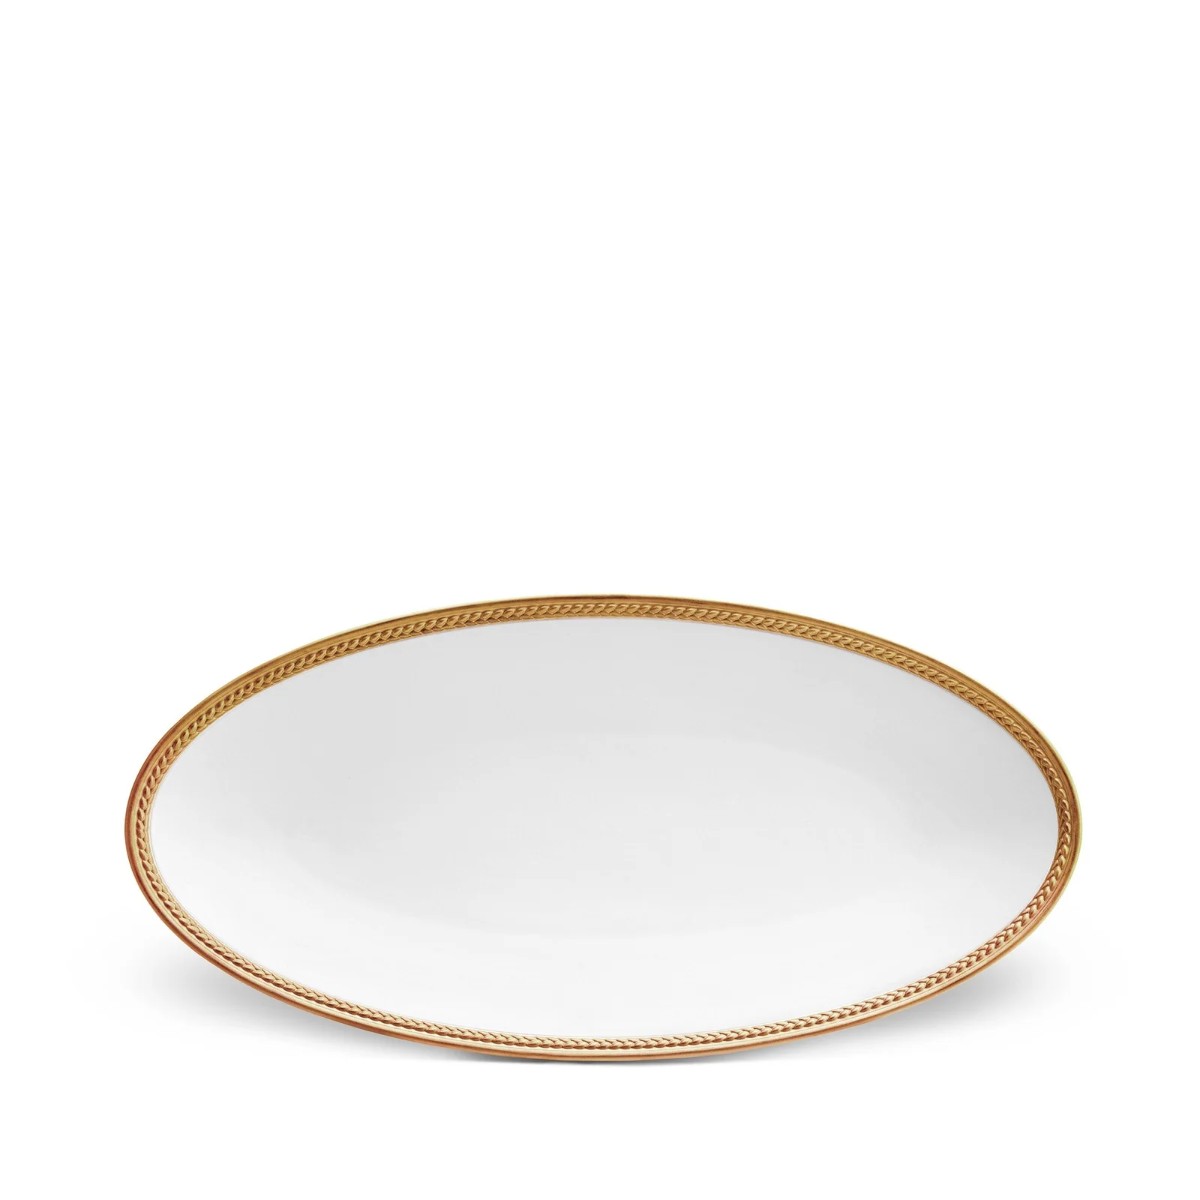 L’Objet | Soie Tressee Oval Platter - Small | Gold